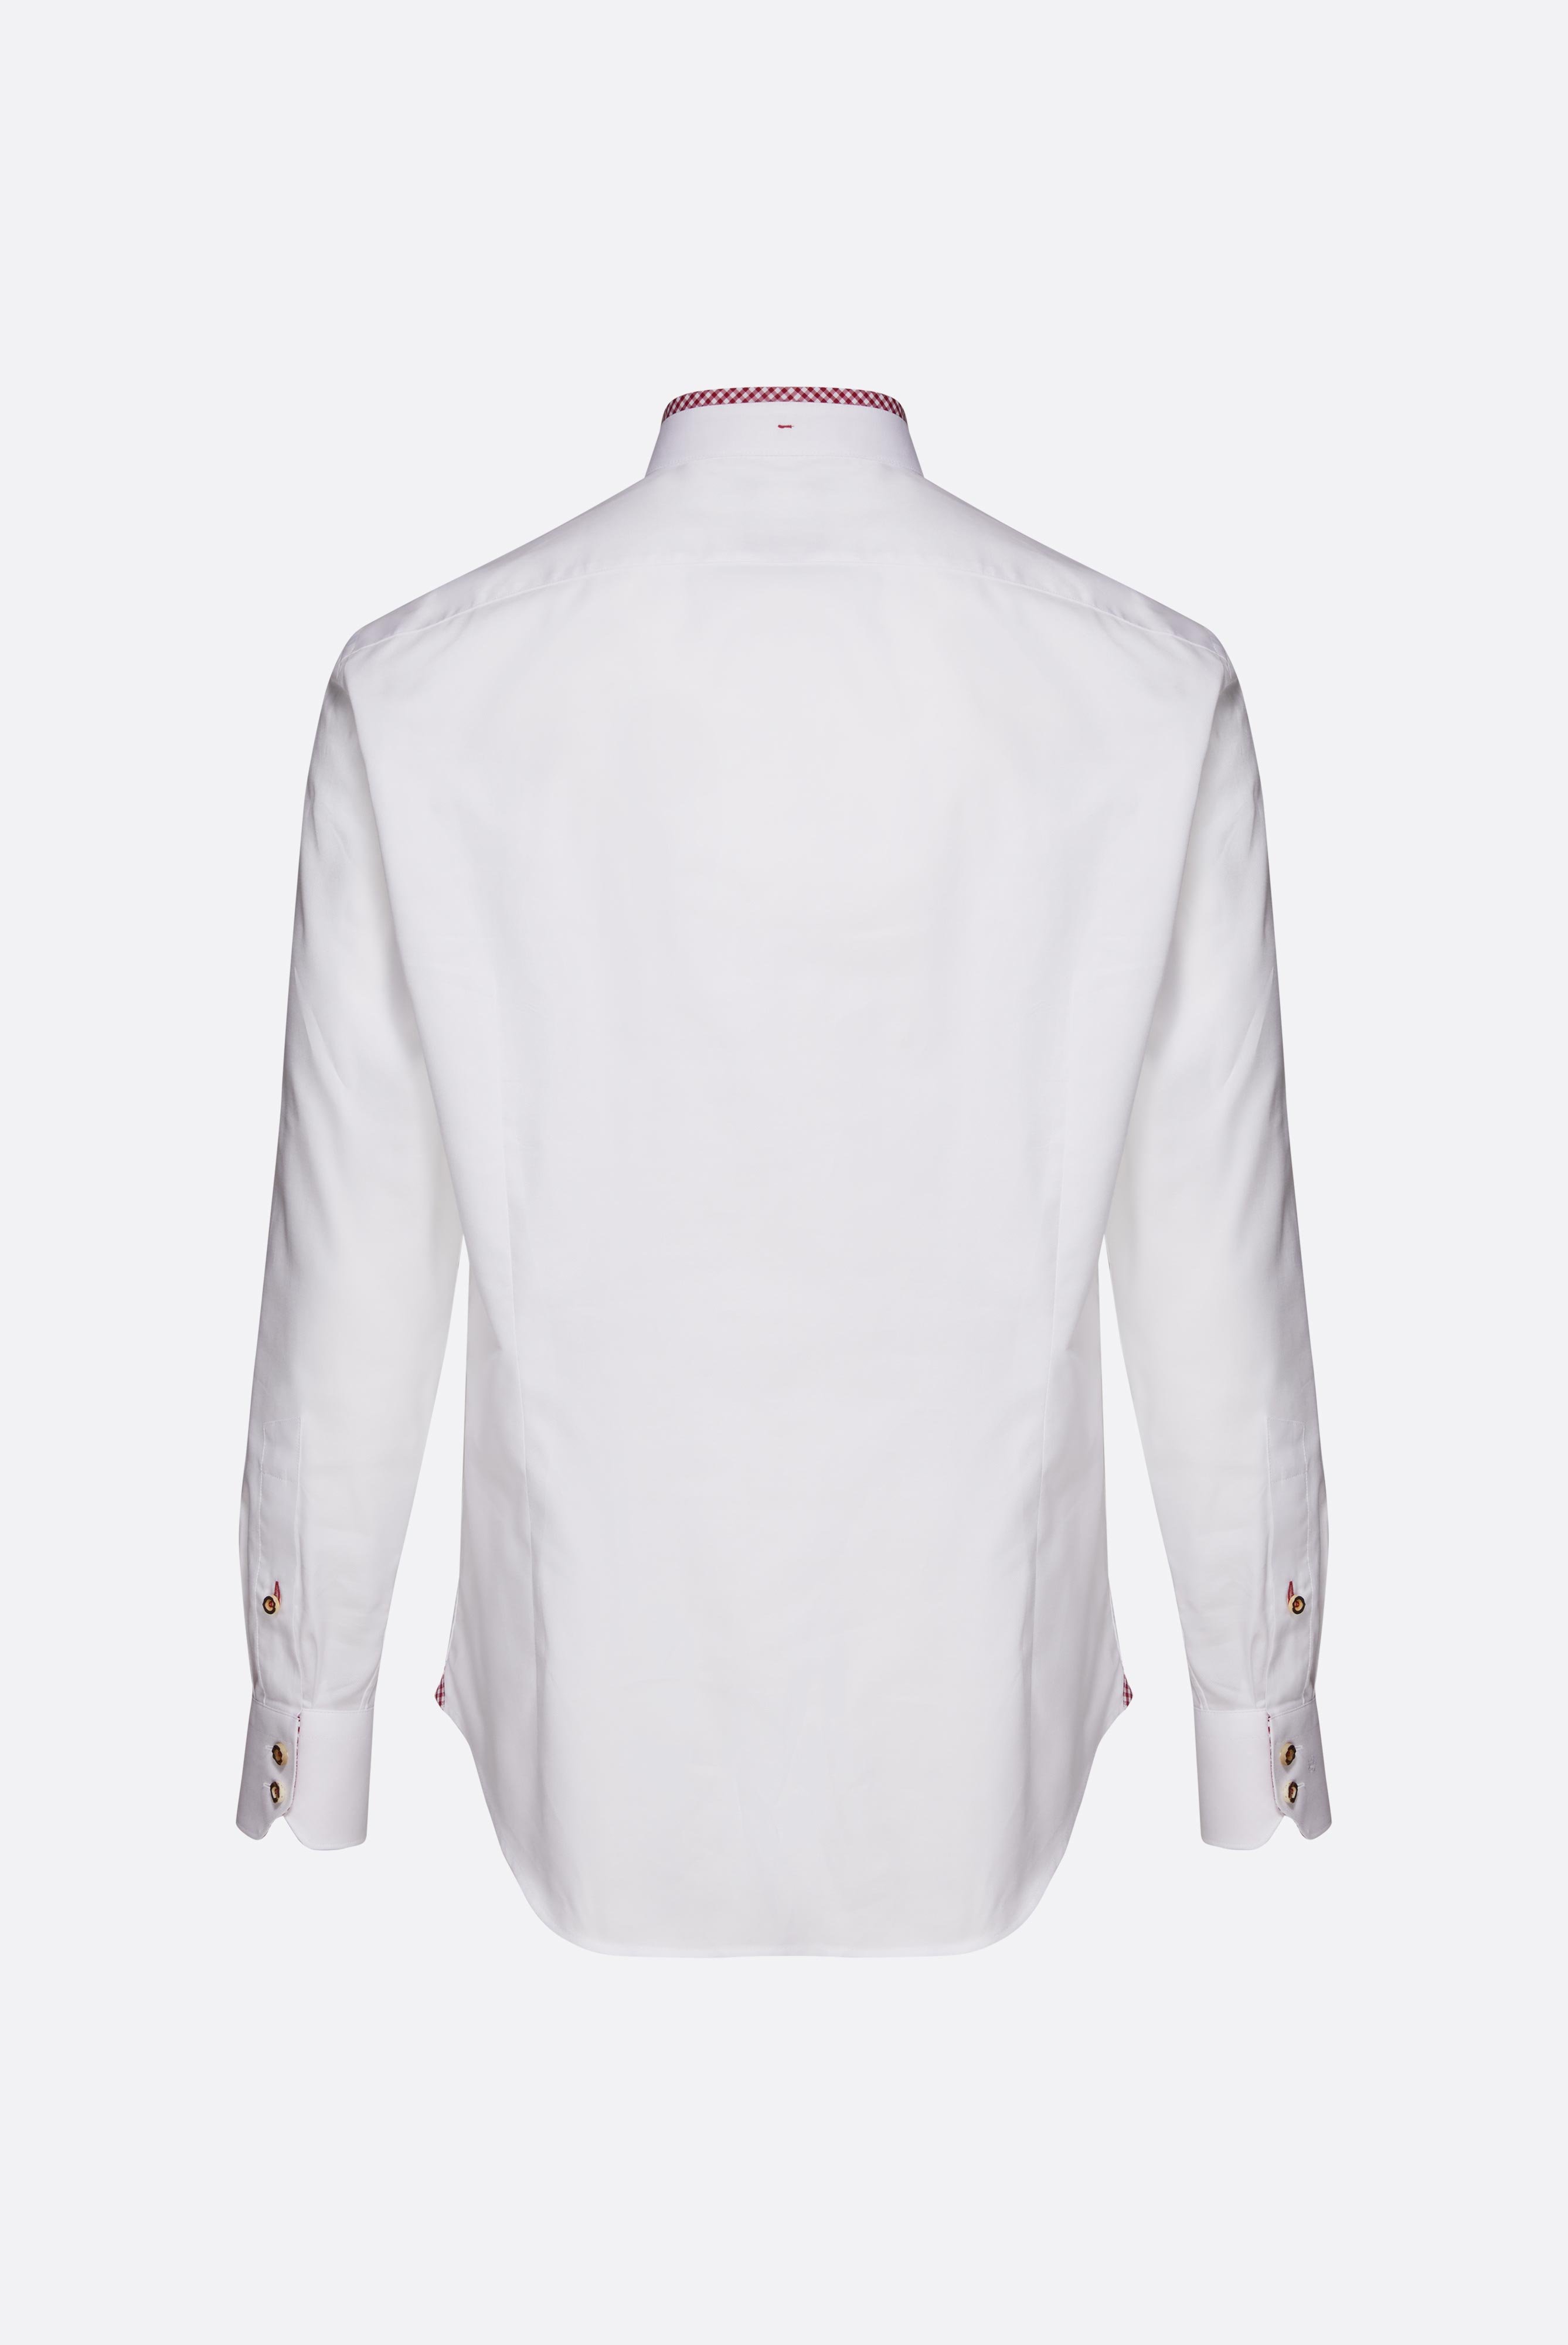 Festliche Hemden+Oxford Trachtenhemd mit Farbdetail Tailor Fit+20.2081.8Q.150251.005.39